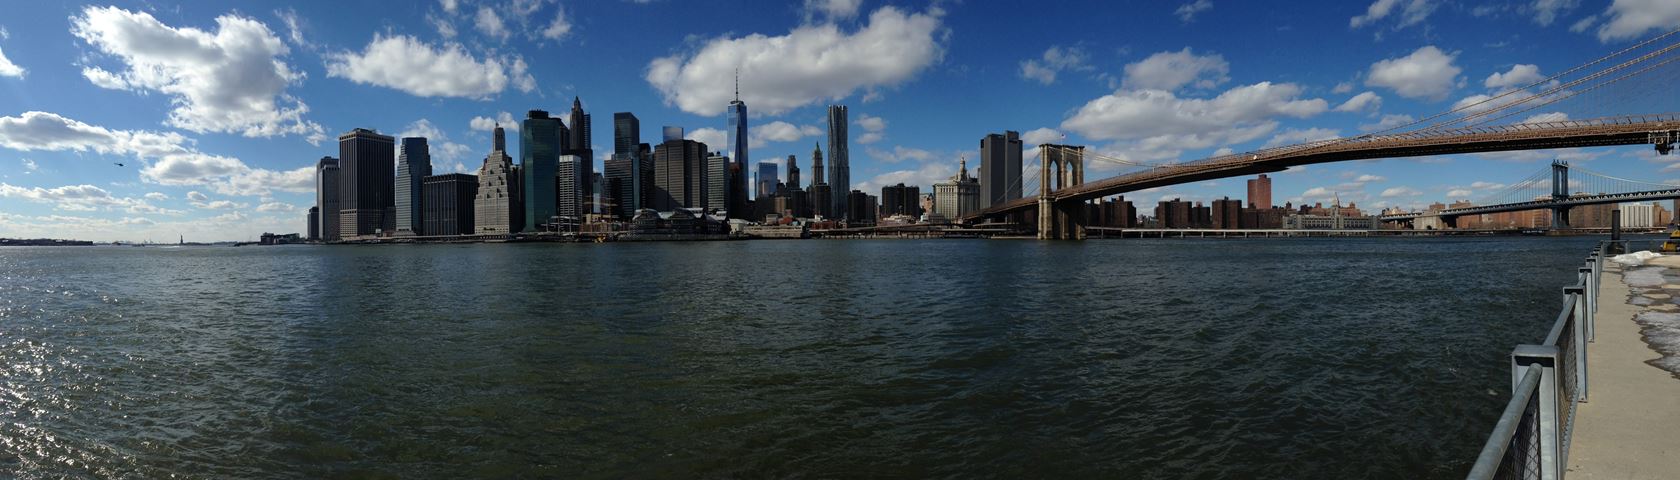 Panorama Manhattan Island